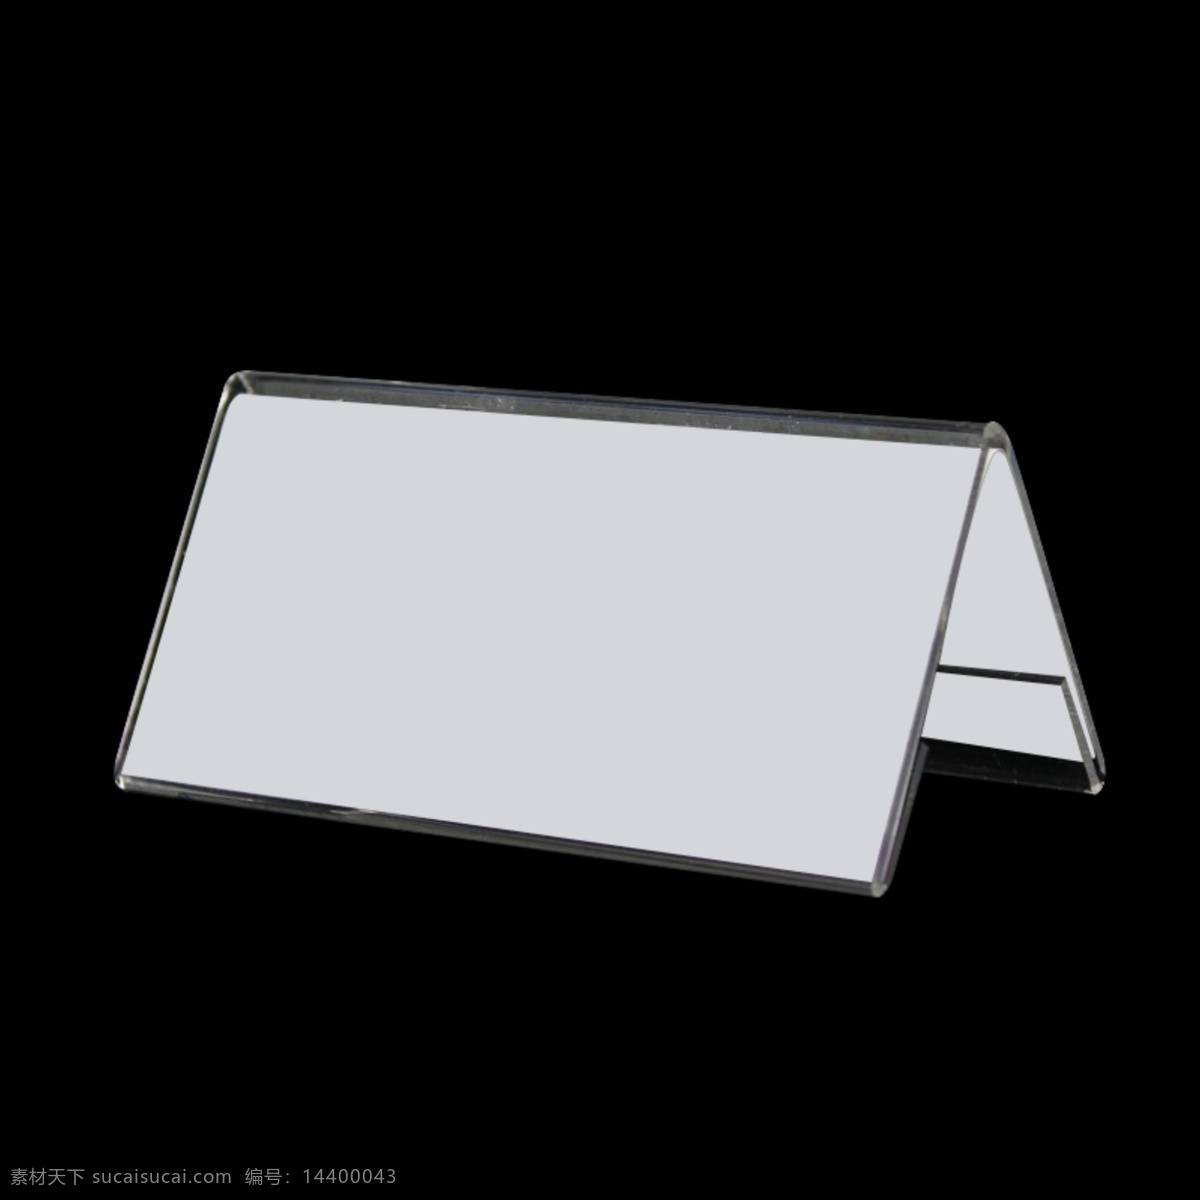 会议牌 空白 效果图 分层 替换 桌牌 台牌 会议台牌 台卡 环境设计